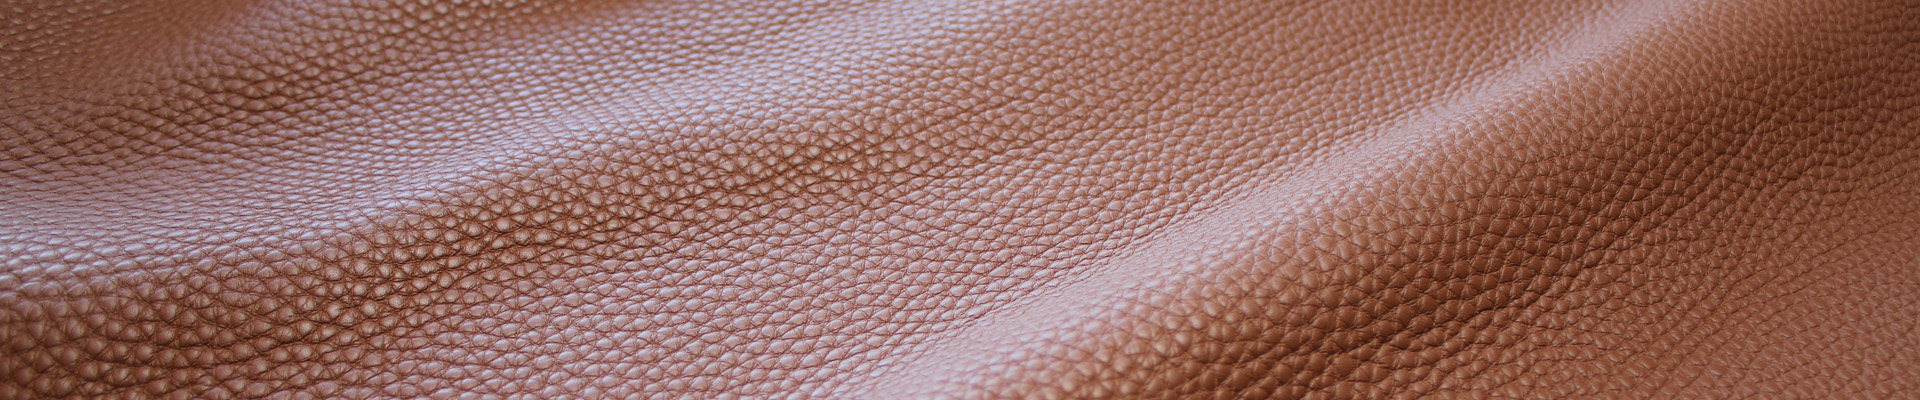 Leather ITALO for the Italian market